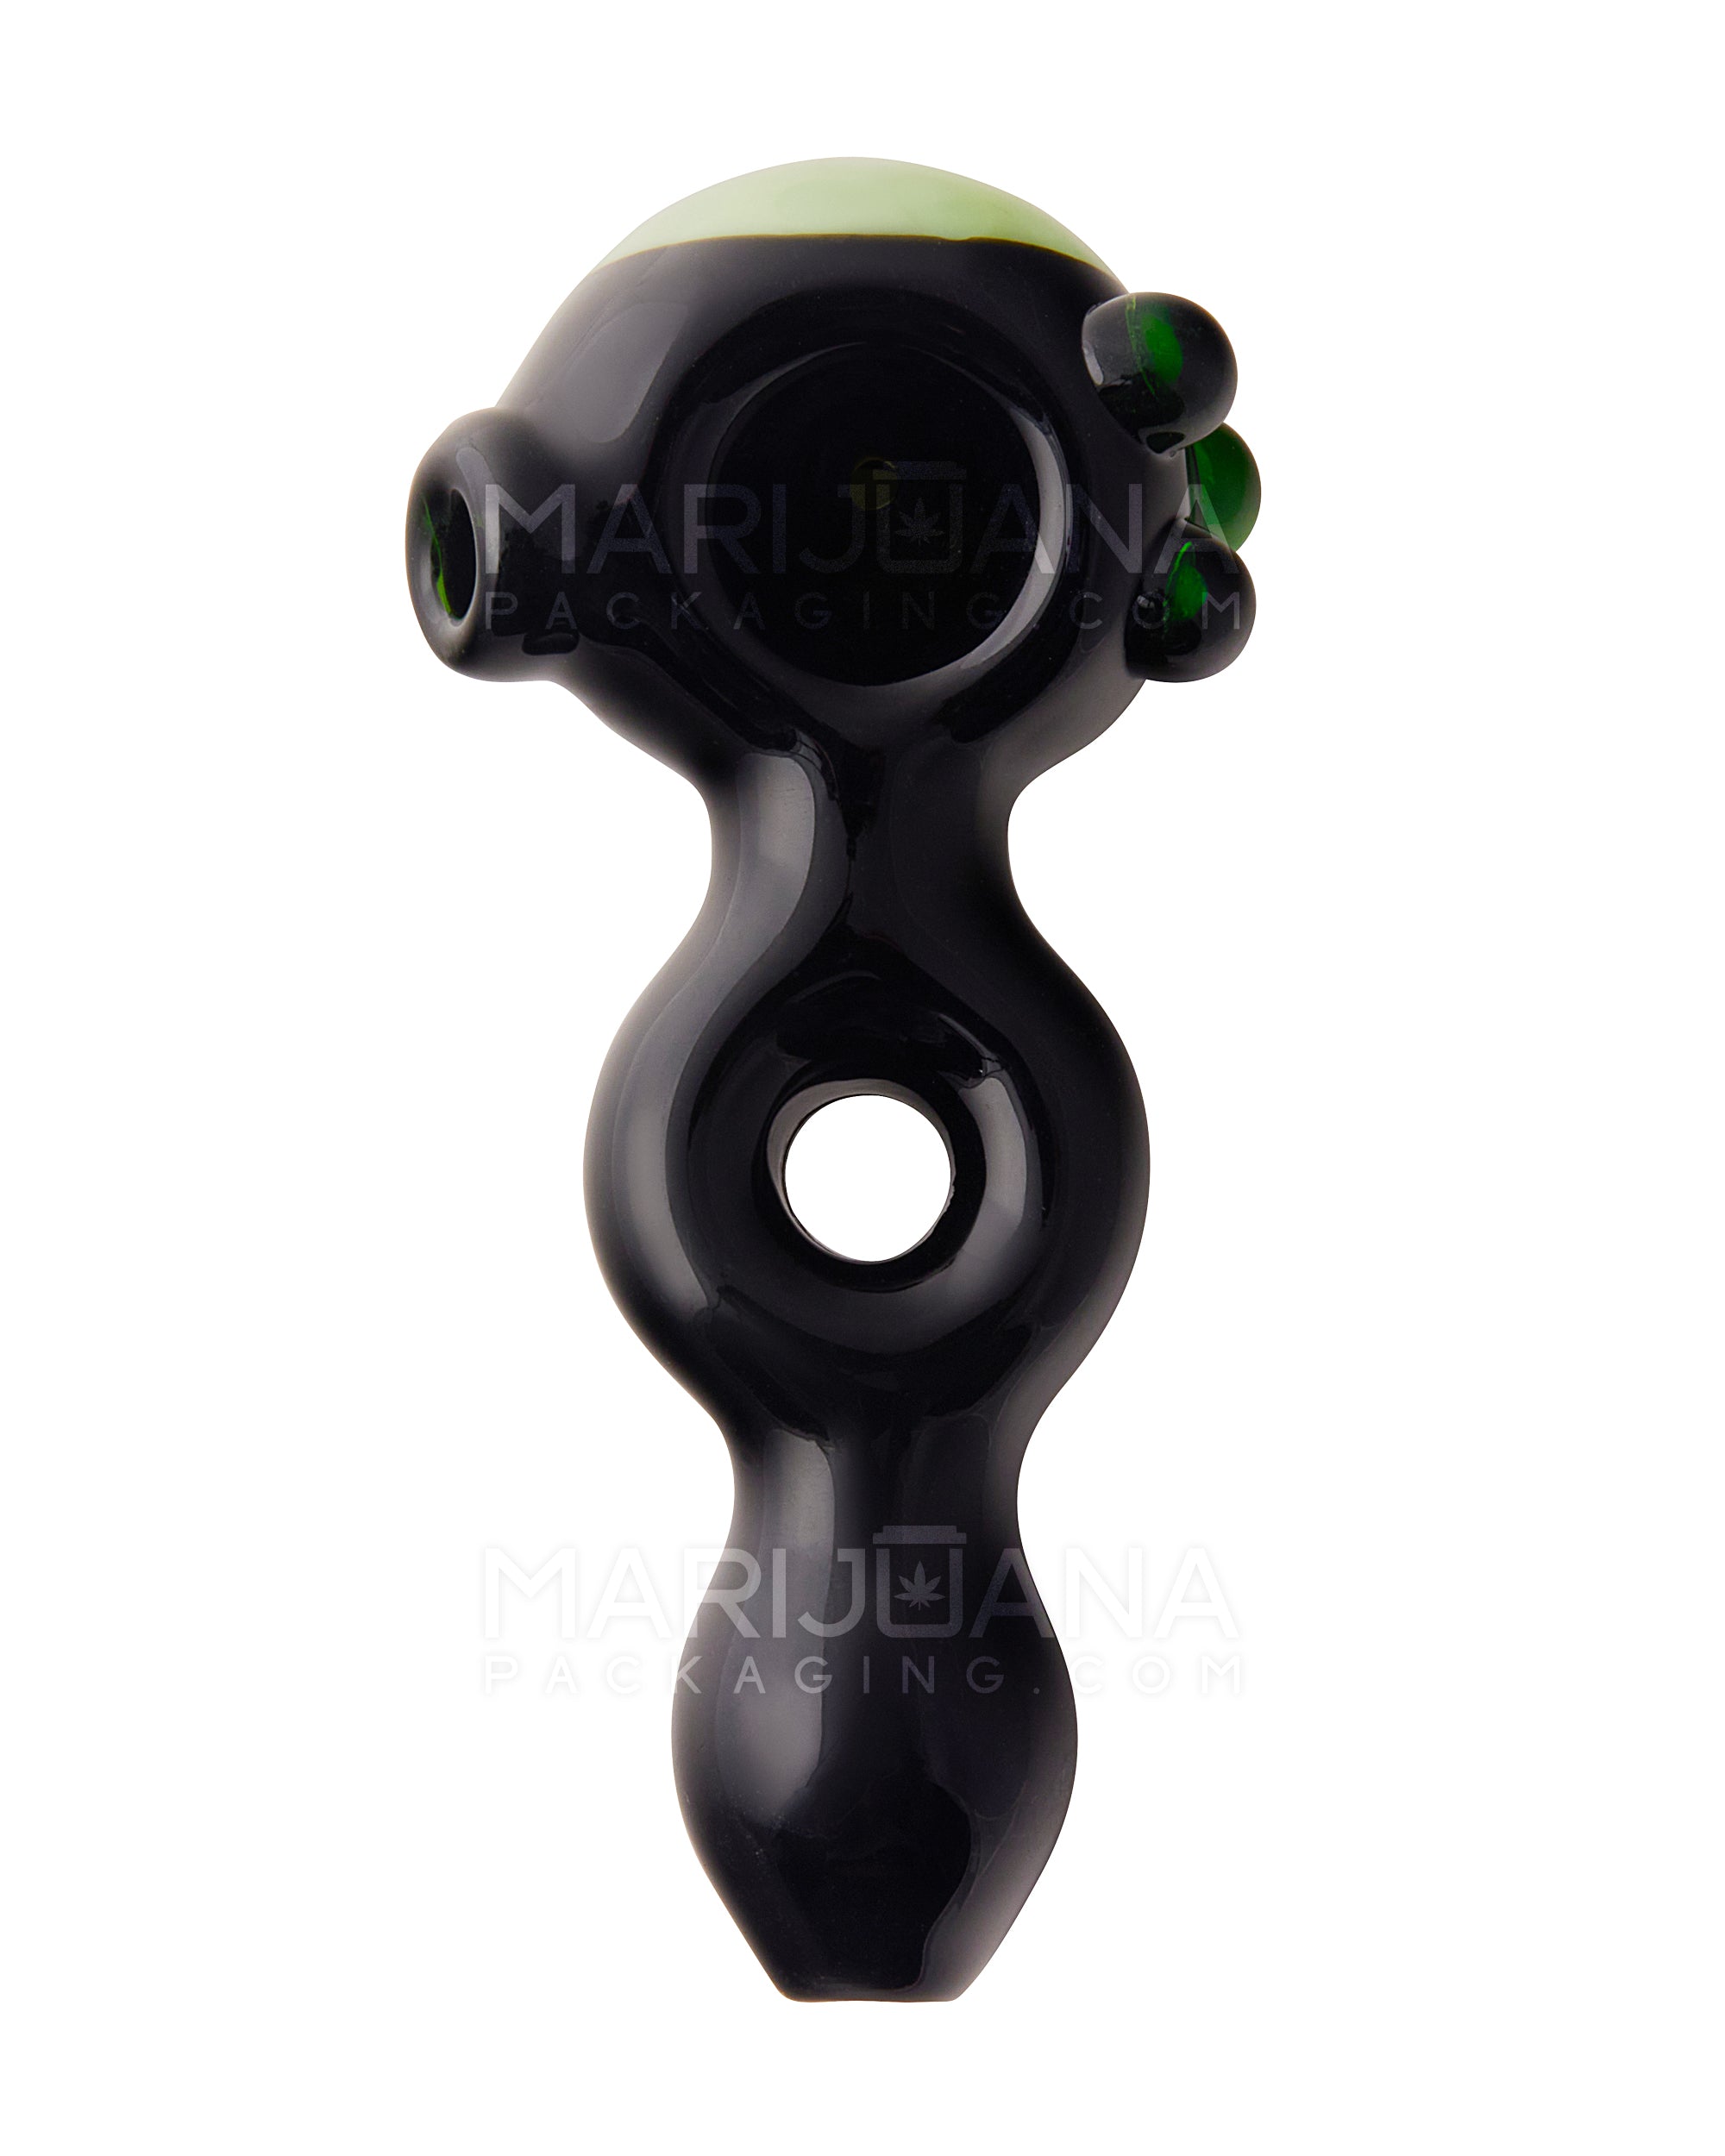 Horsehoe Mouthpiece Spoon Hand Pipe w/ Triple Knockers | 5.25in Long - Glass - Black